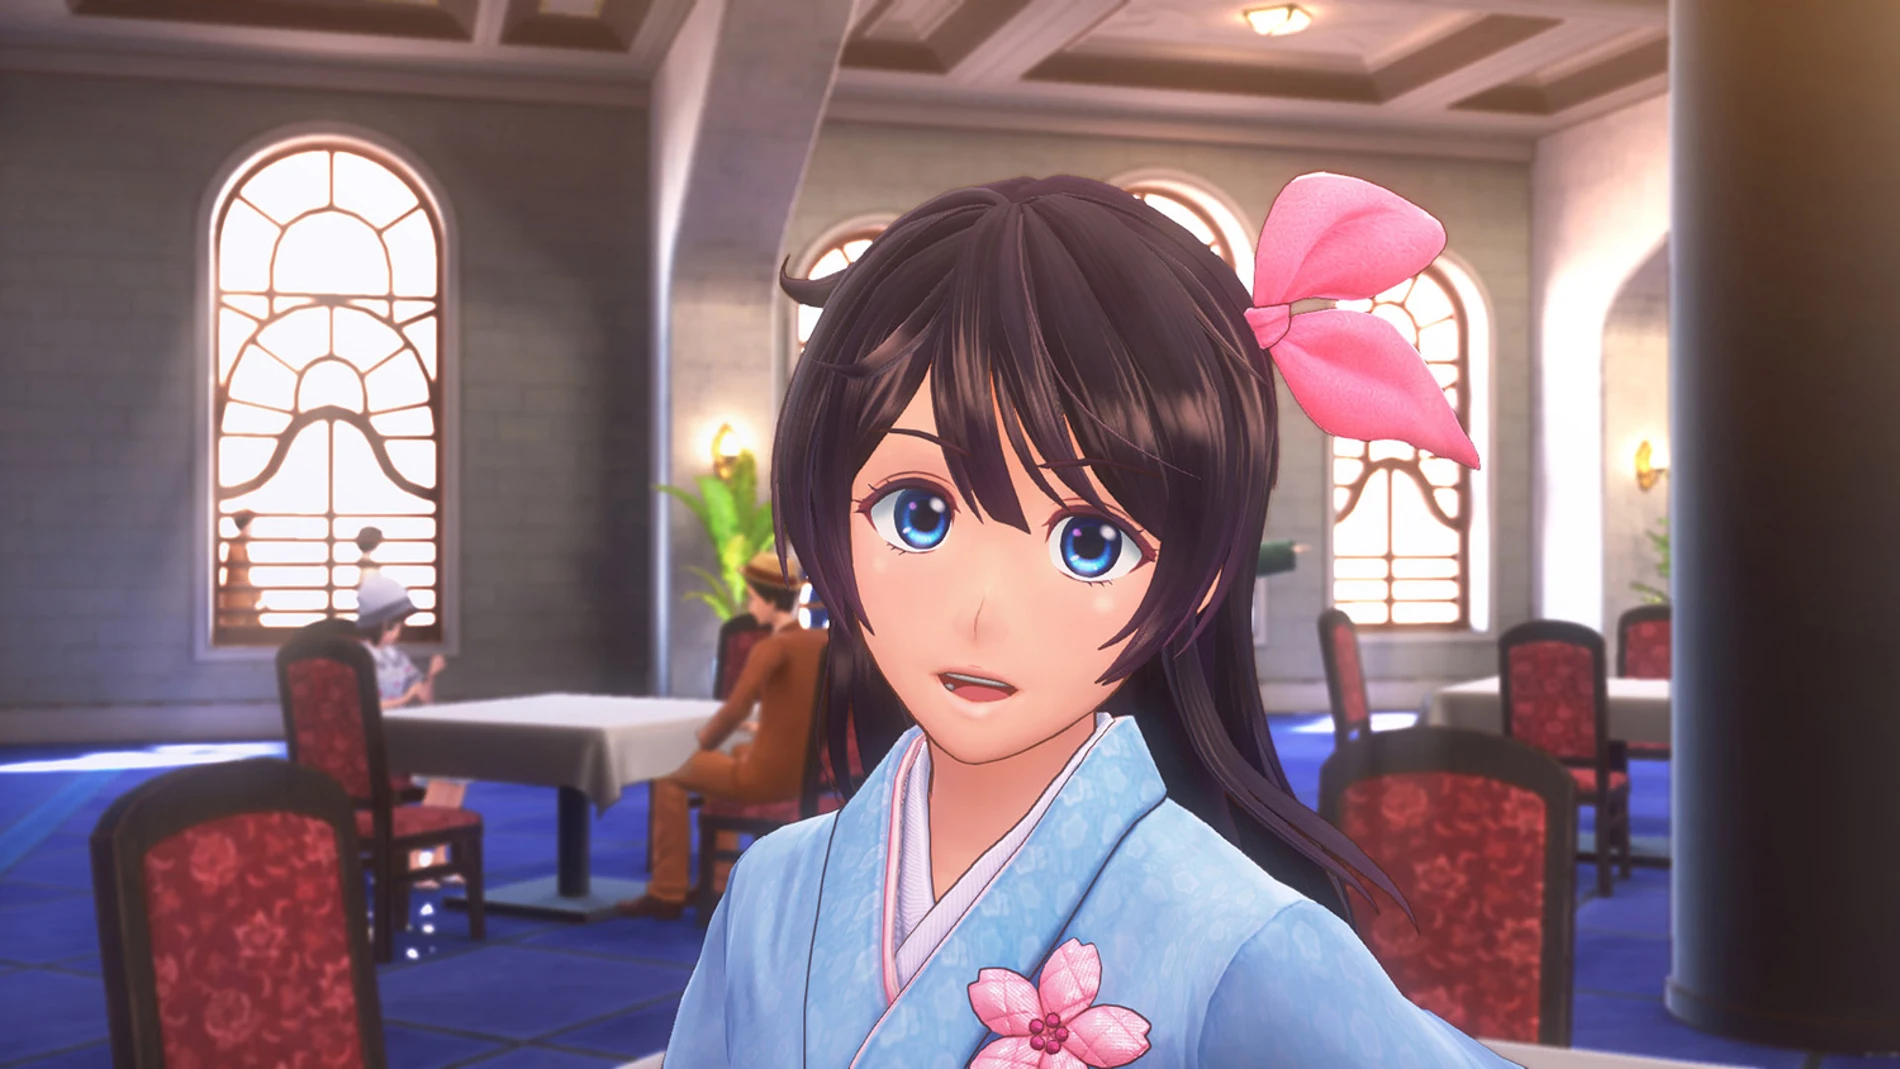 Anunciado Project Sakura Wars para PS4, que confirma lanzamiento en occidente